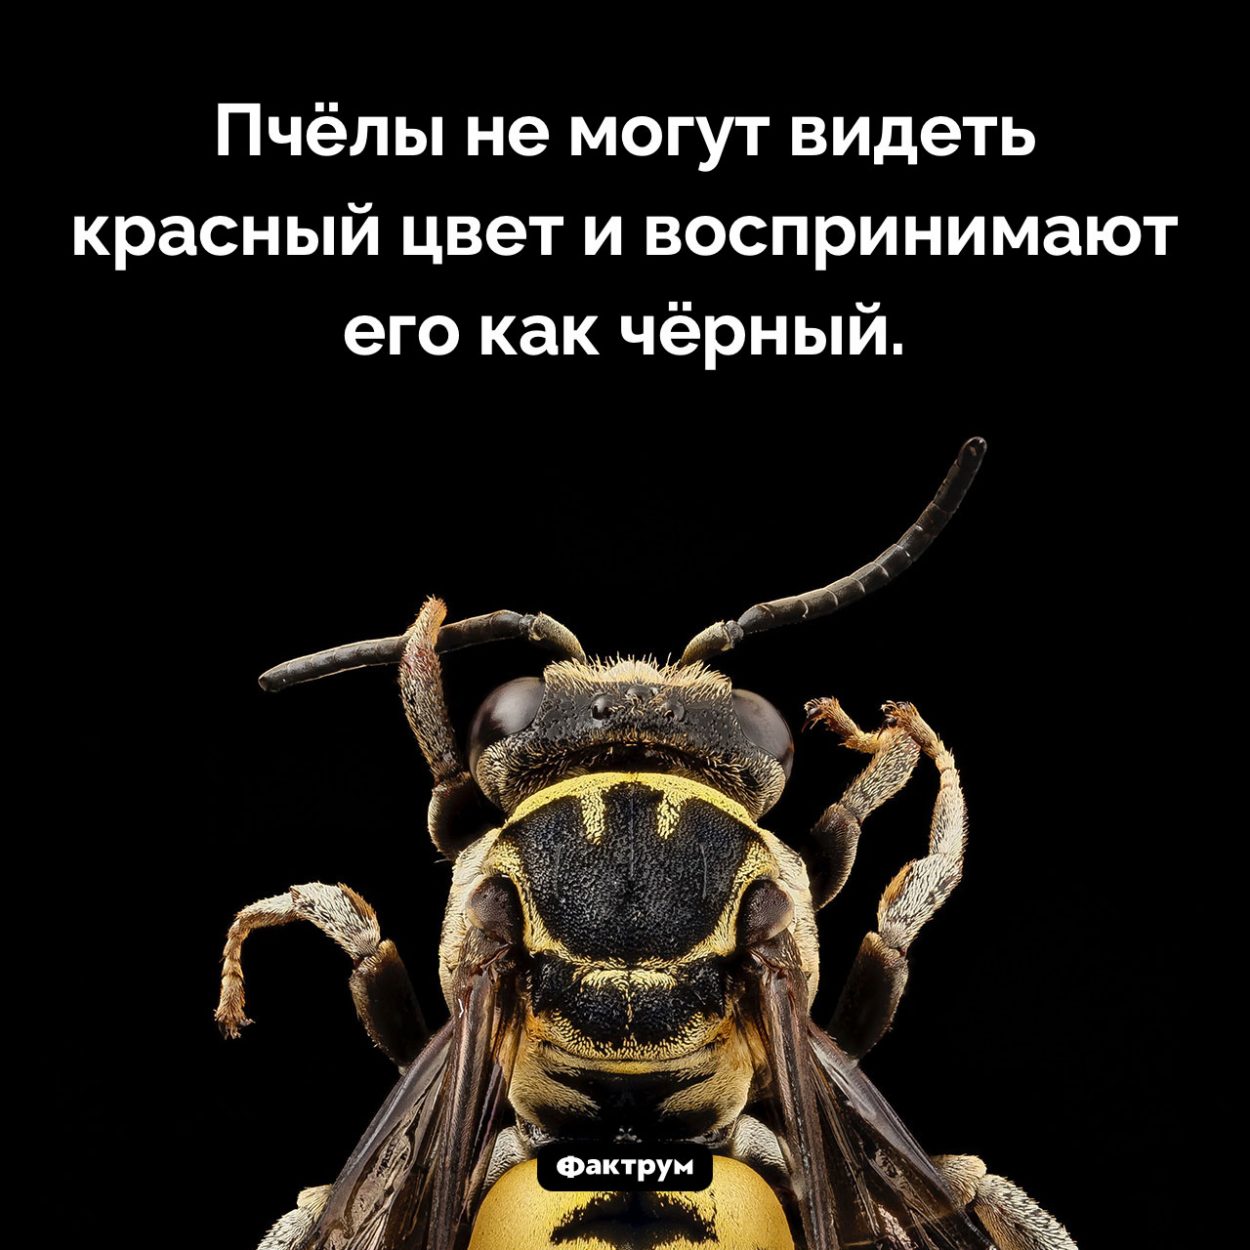 Пчёлы не могут видеть красный цвет. Пчёлы не могут видеть красный цвет и воспринимают его как чёрный.